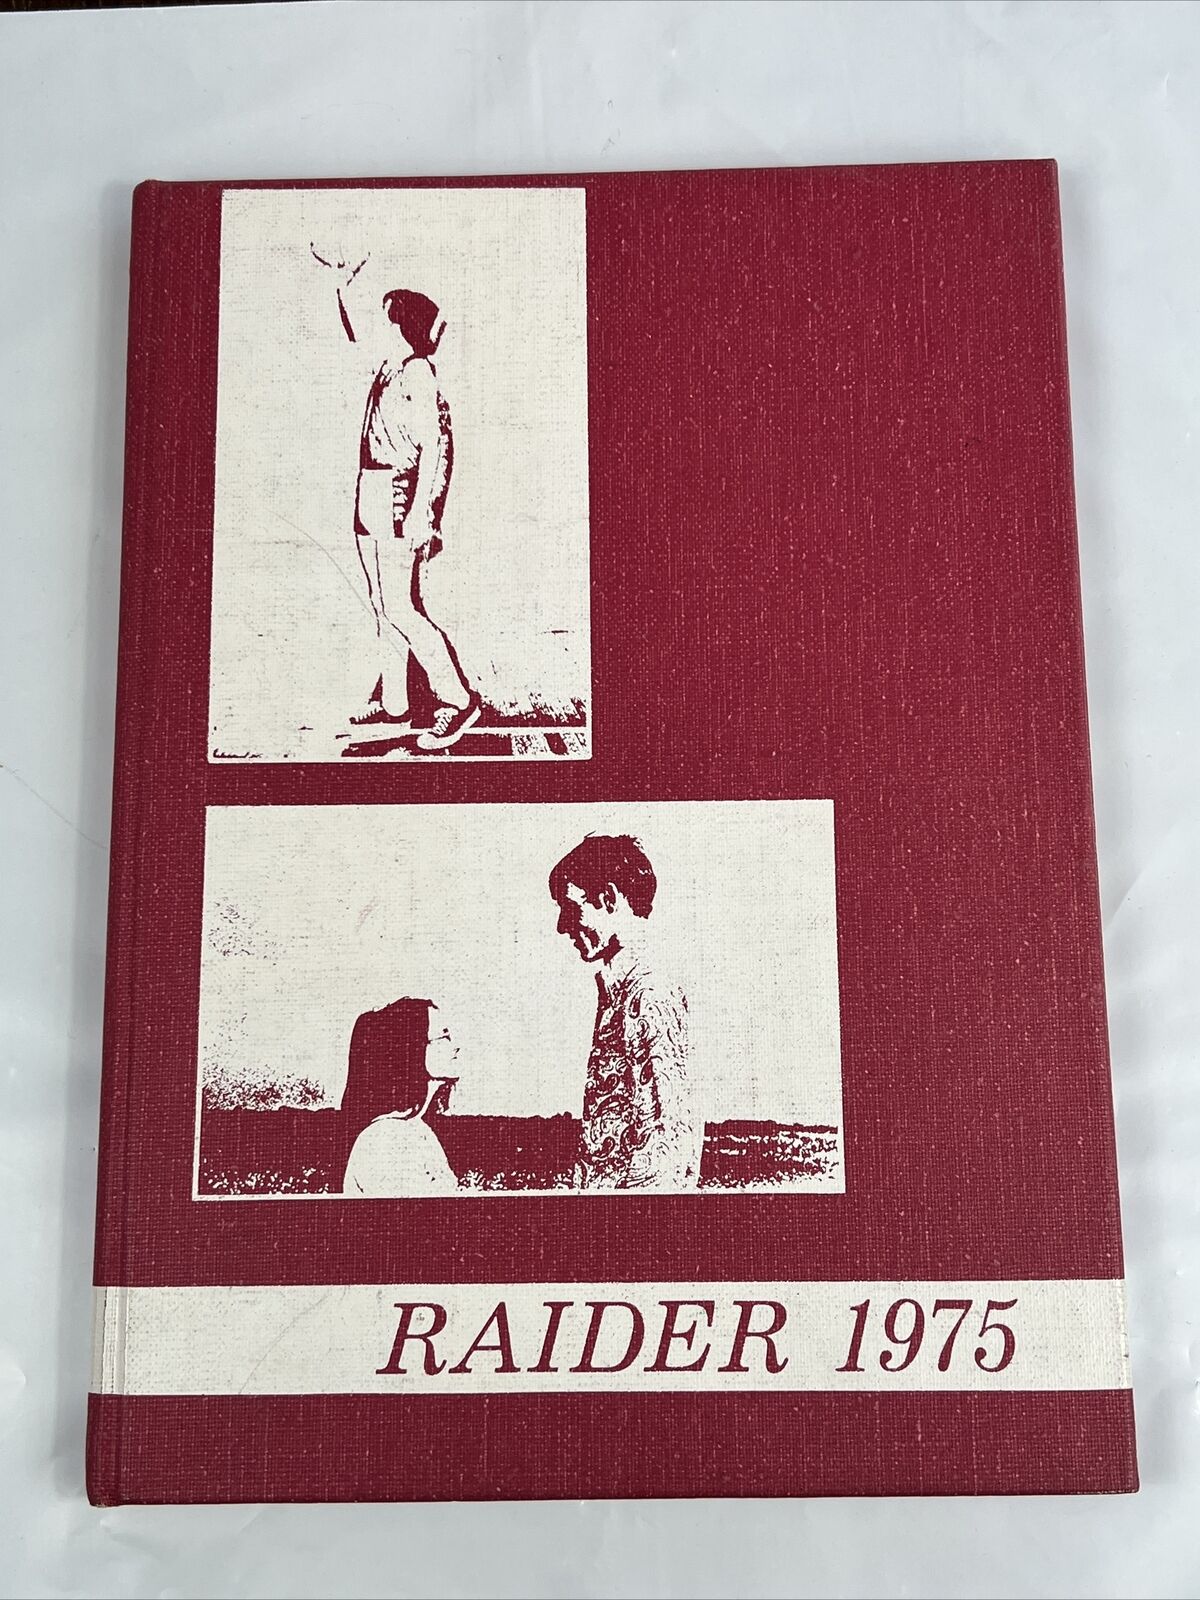 Gray Academy High School 1975 Raider Yearbook Ashland Mississippi 1975 Yearbook